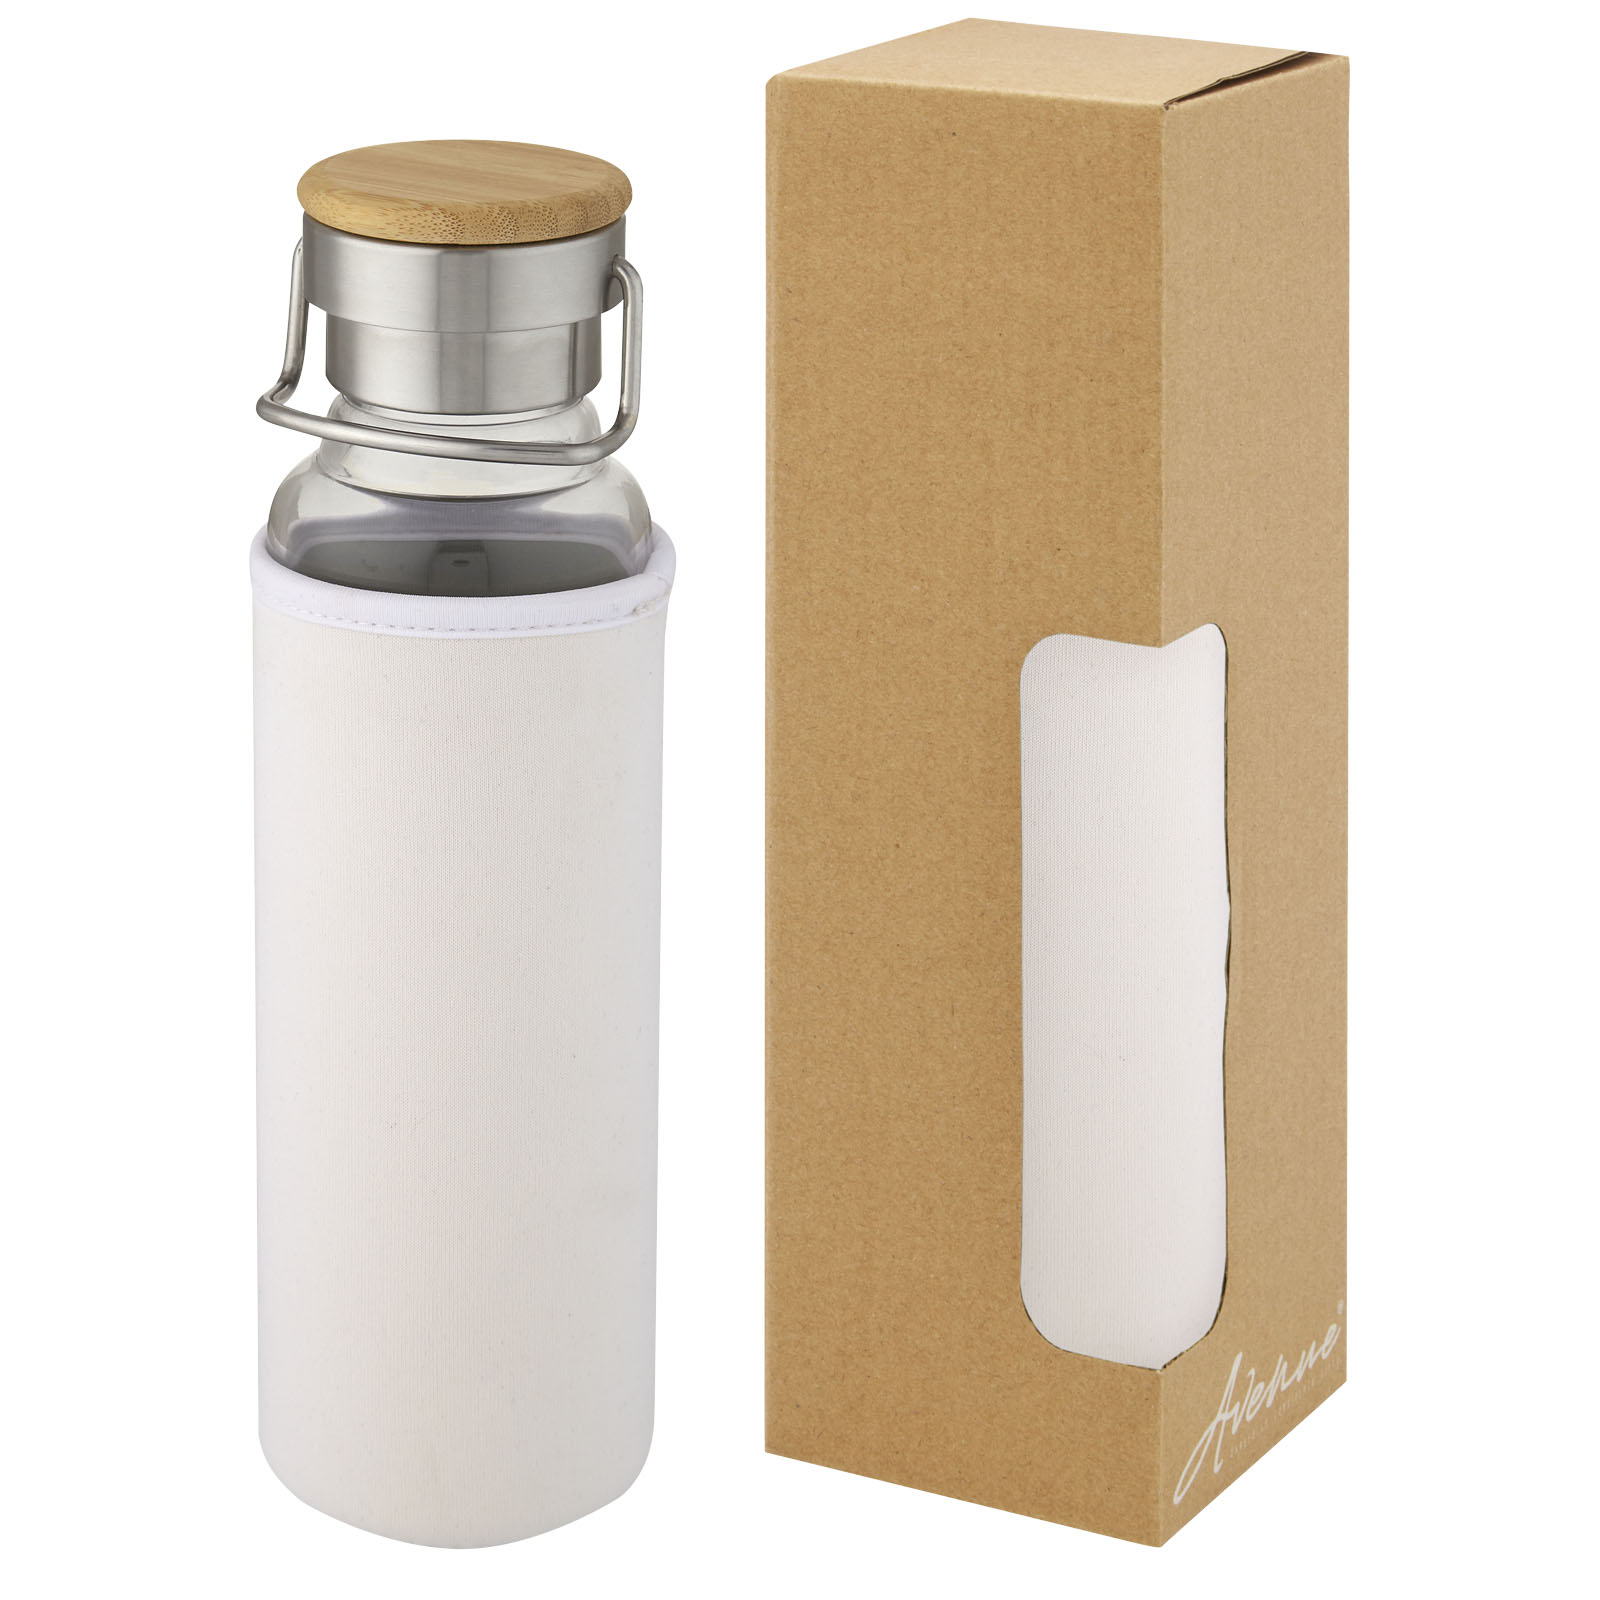 Water bottles - Thor 660 ml glass bottle with neoprene sleeve